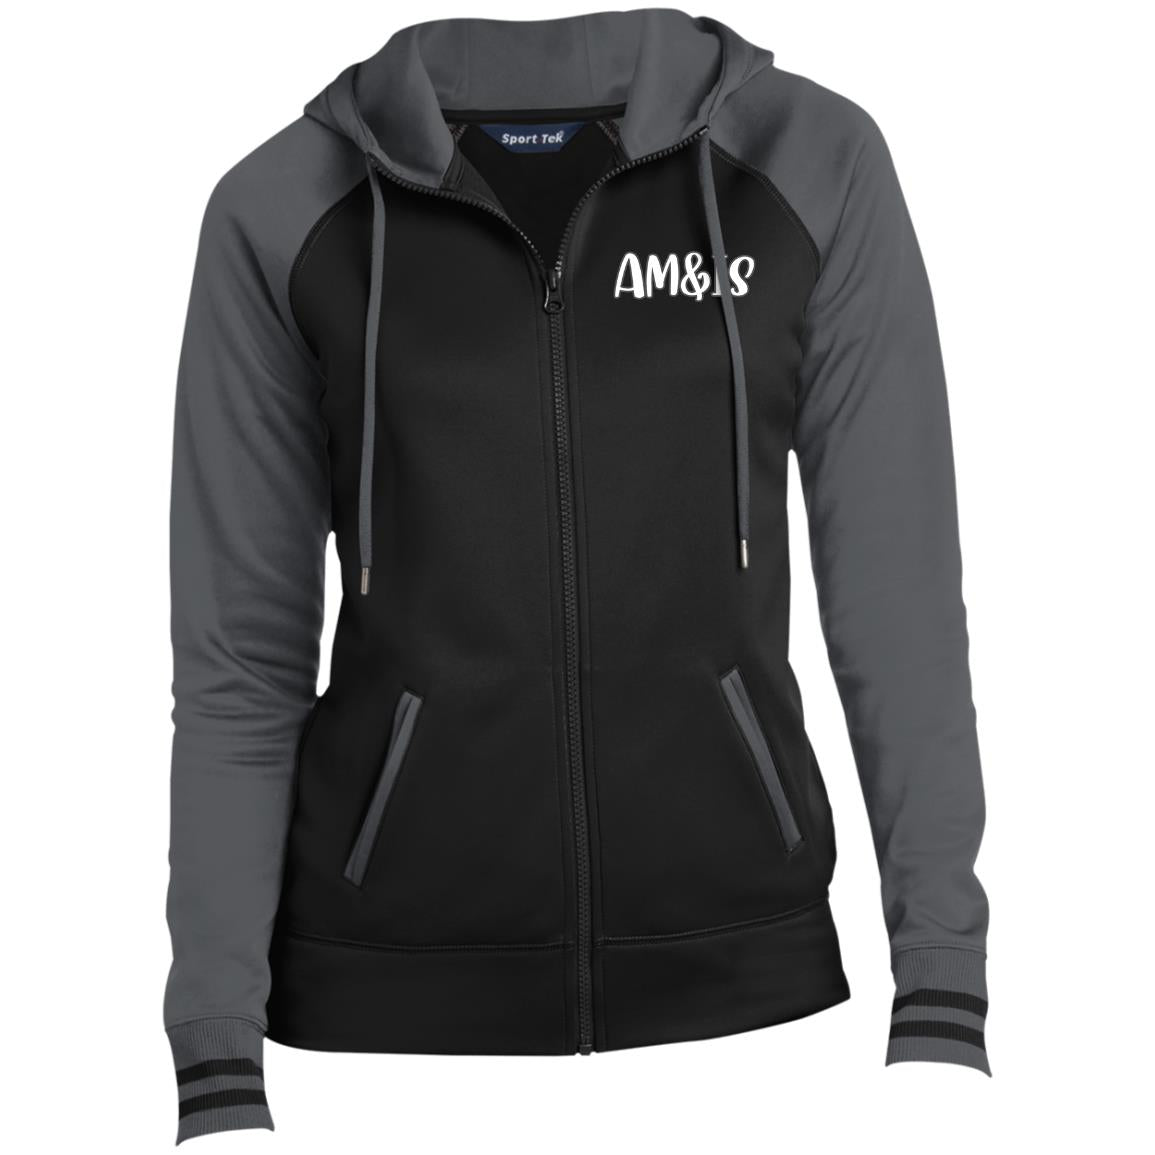 BLACK DARK SMOKE - AM&IS Activewear Ladies' Sport-Wick® Full-Zip Hooded Jacket - womens jacket at TFC&H Co.